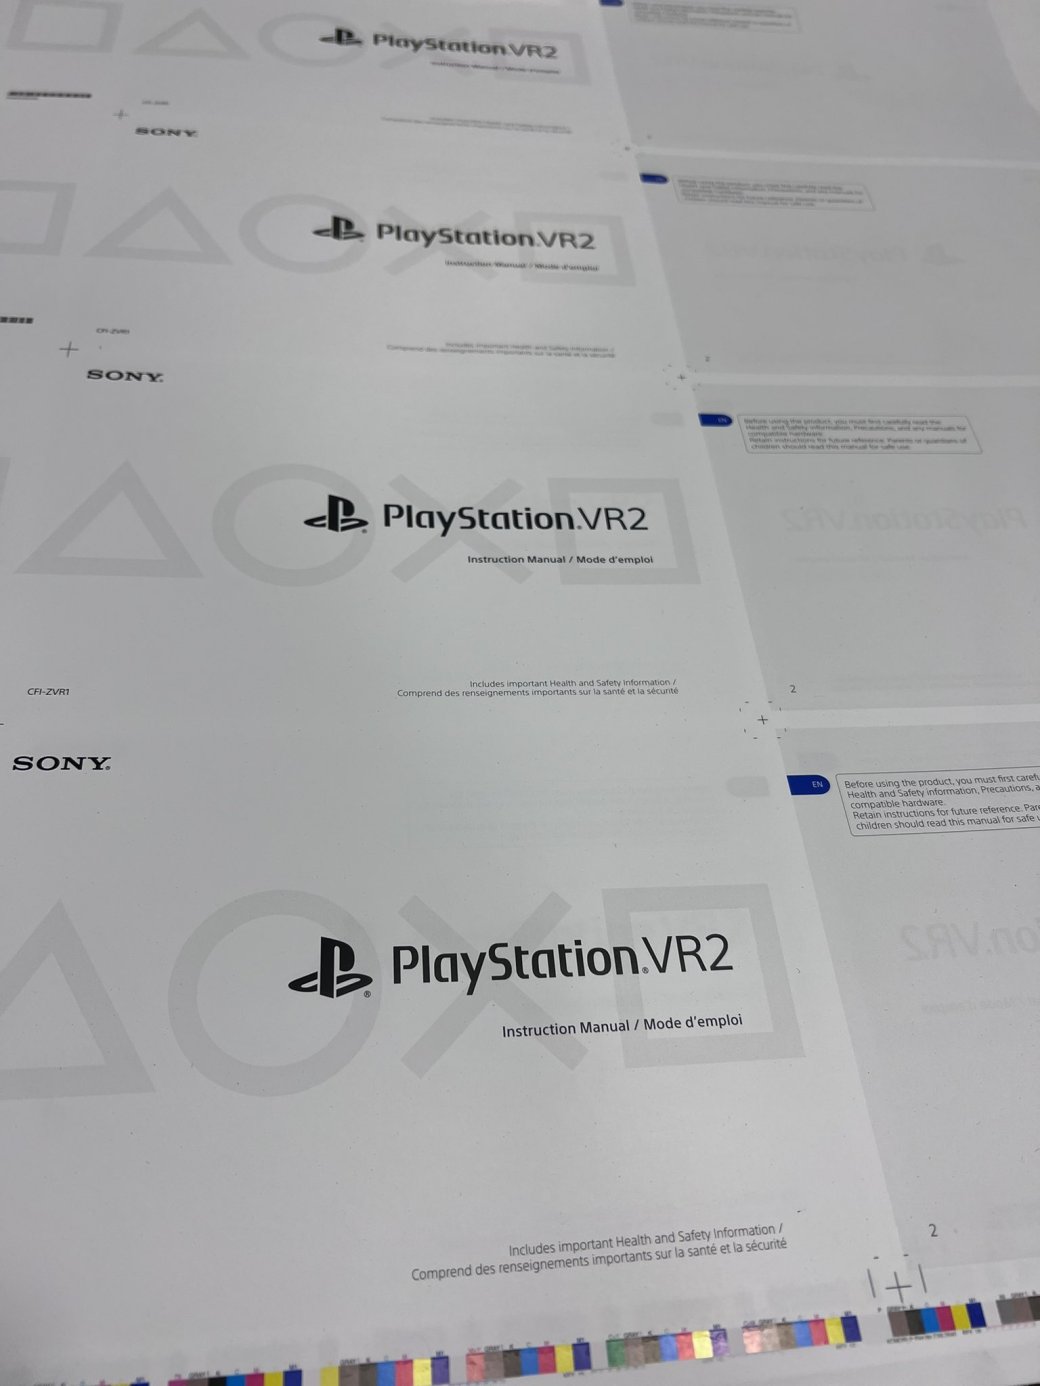 Галерея В сеть попало руководство гарнитуры PlayStation VR2 - 3 фото